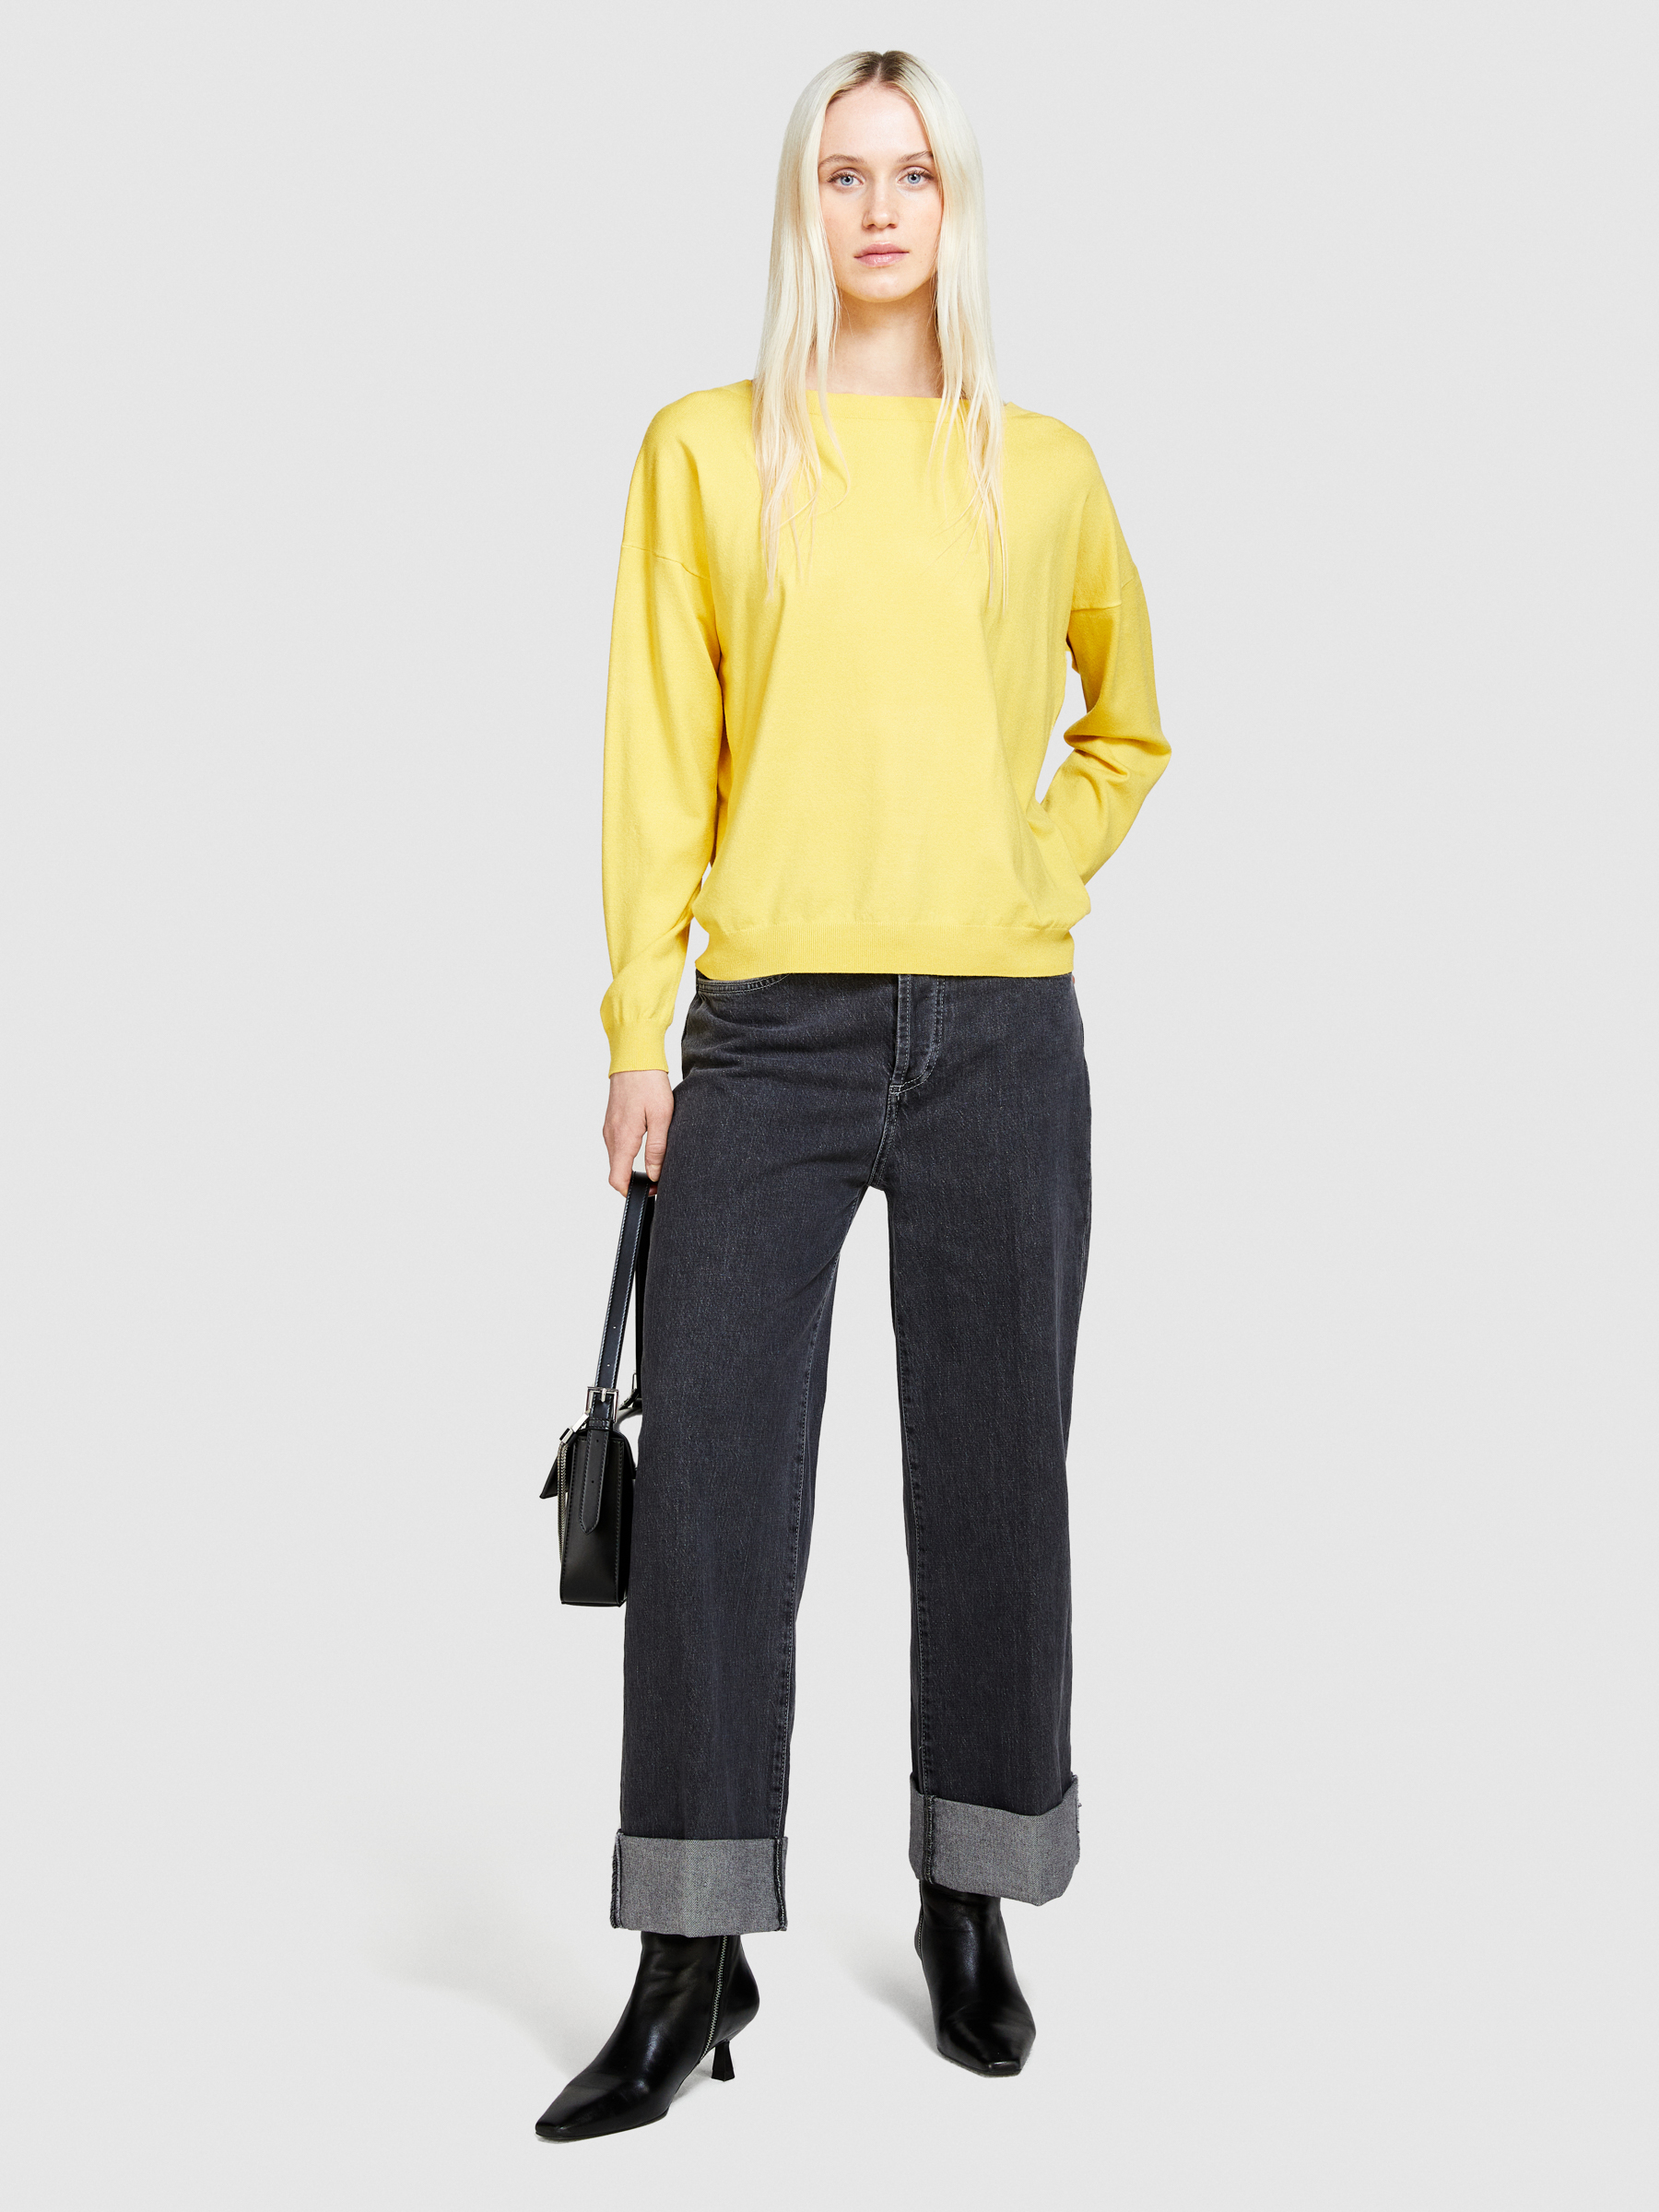 Sisley - Boat Neck Sweater, Woman, Yellow, Size: XL